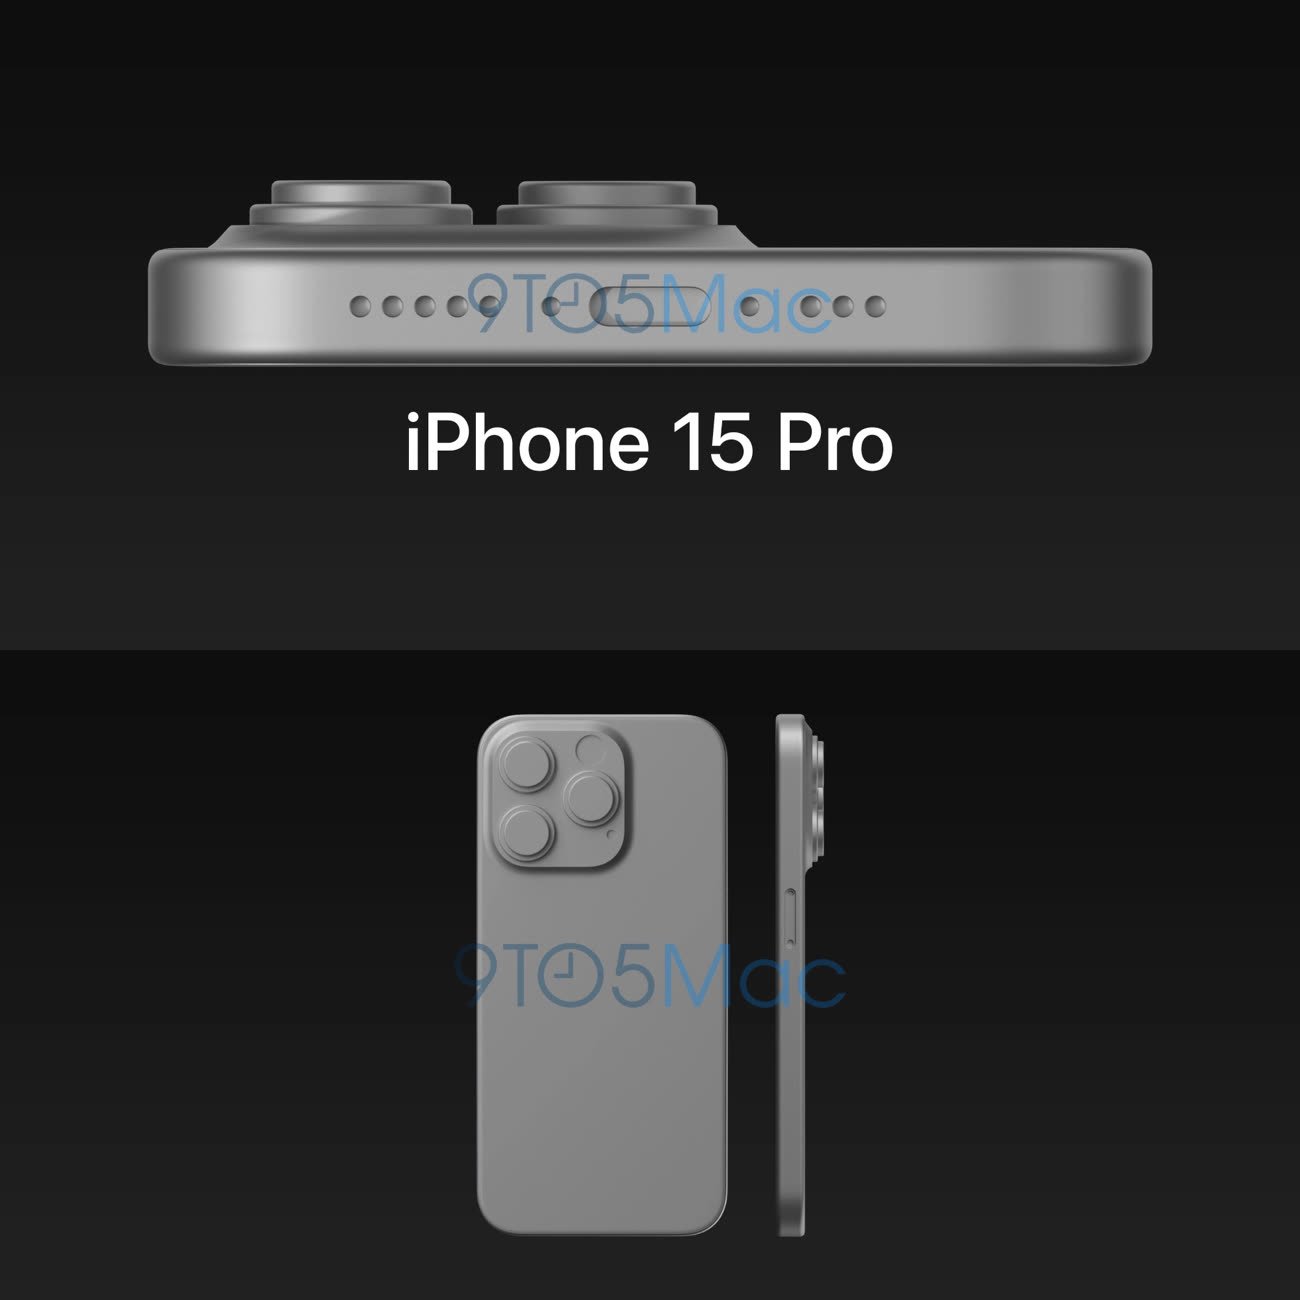 Les mises à jour de la surface de l'écran de l'iPhone 15 Pro et